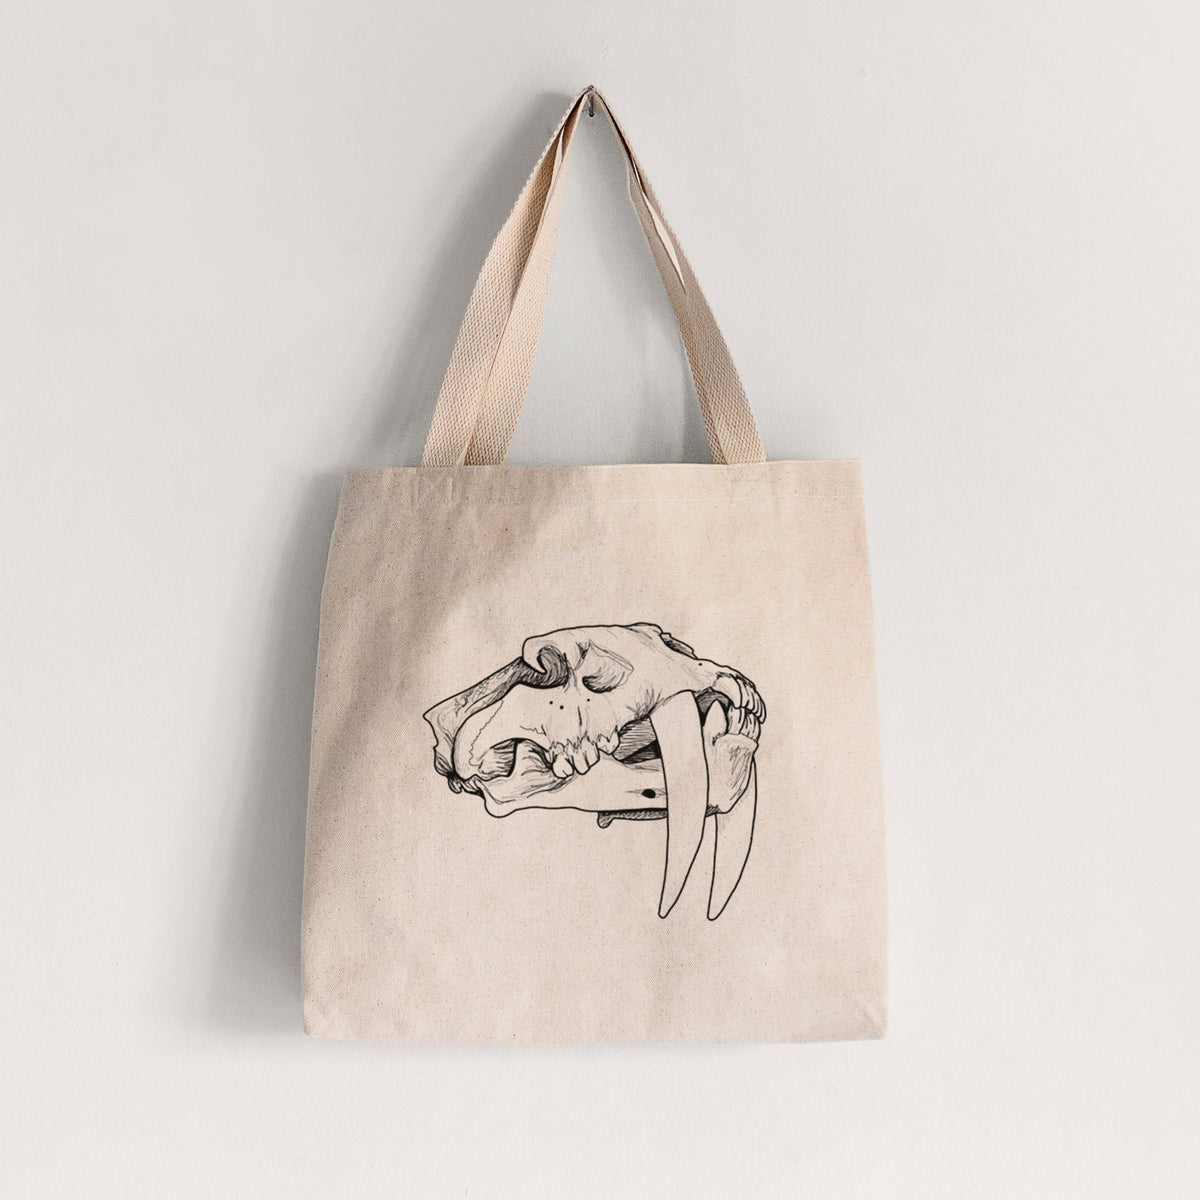 Saber-toothed Tiger Skull - Tote Bag